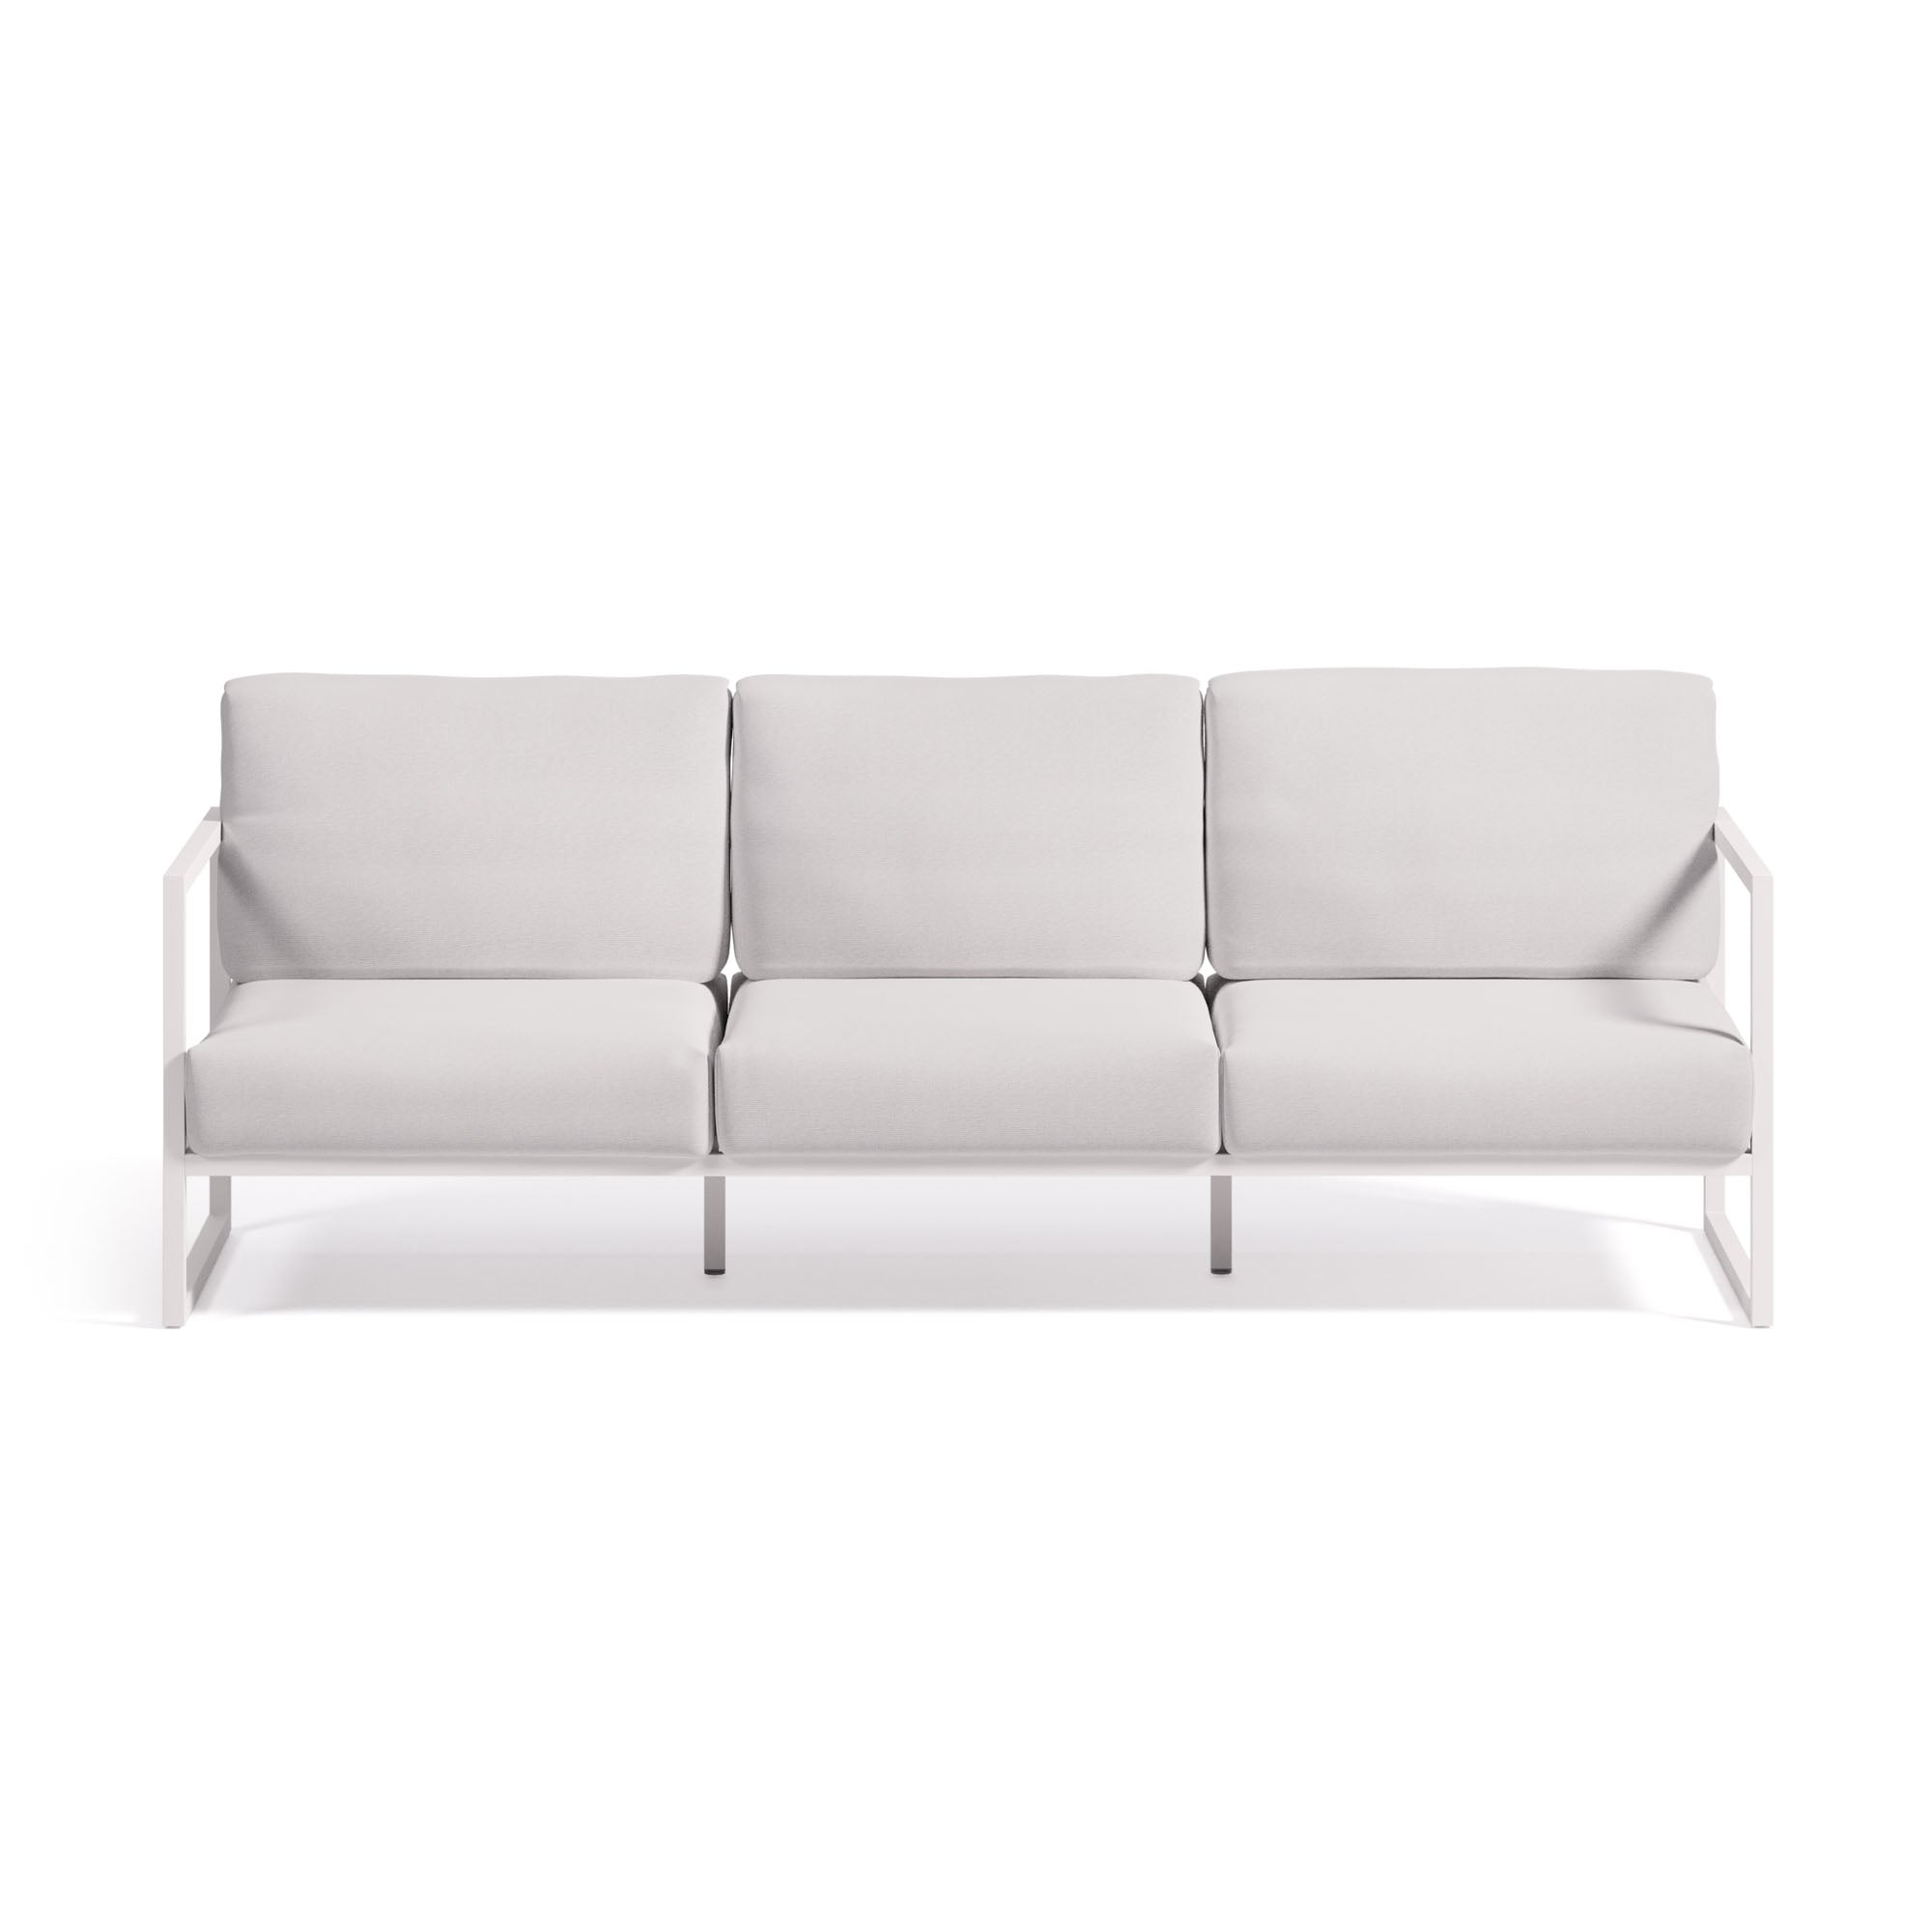 Comova 100% kültéri 3 személyes kanapé, fehér és fehér alumínium, 222 cm